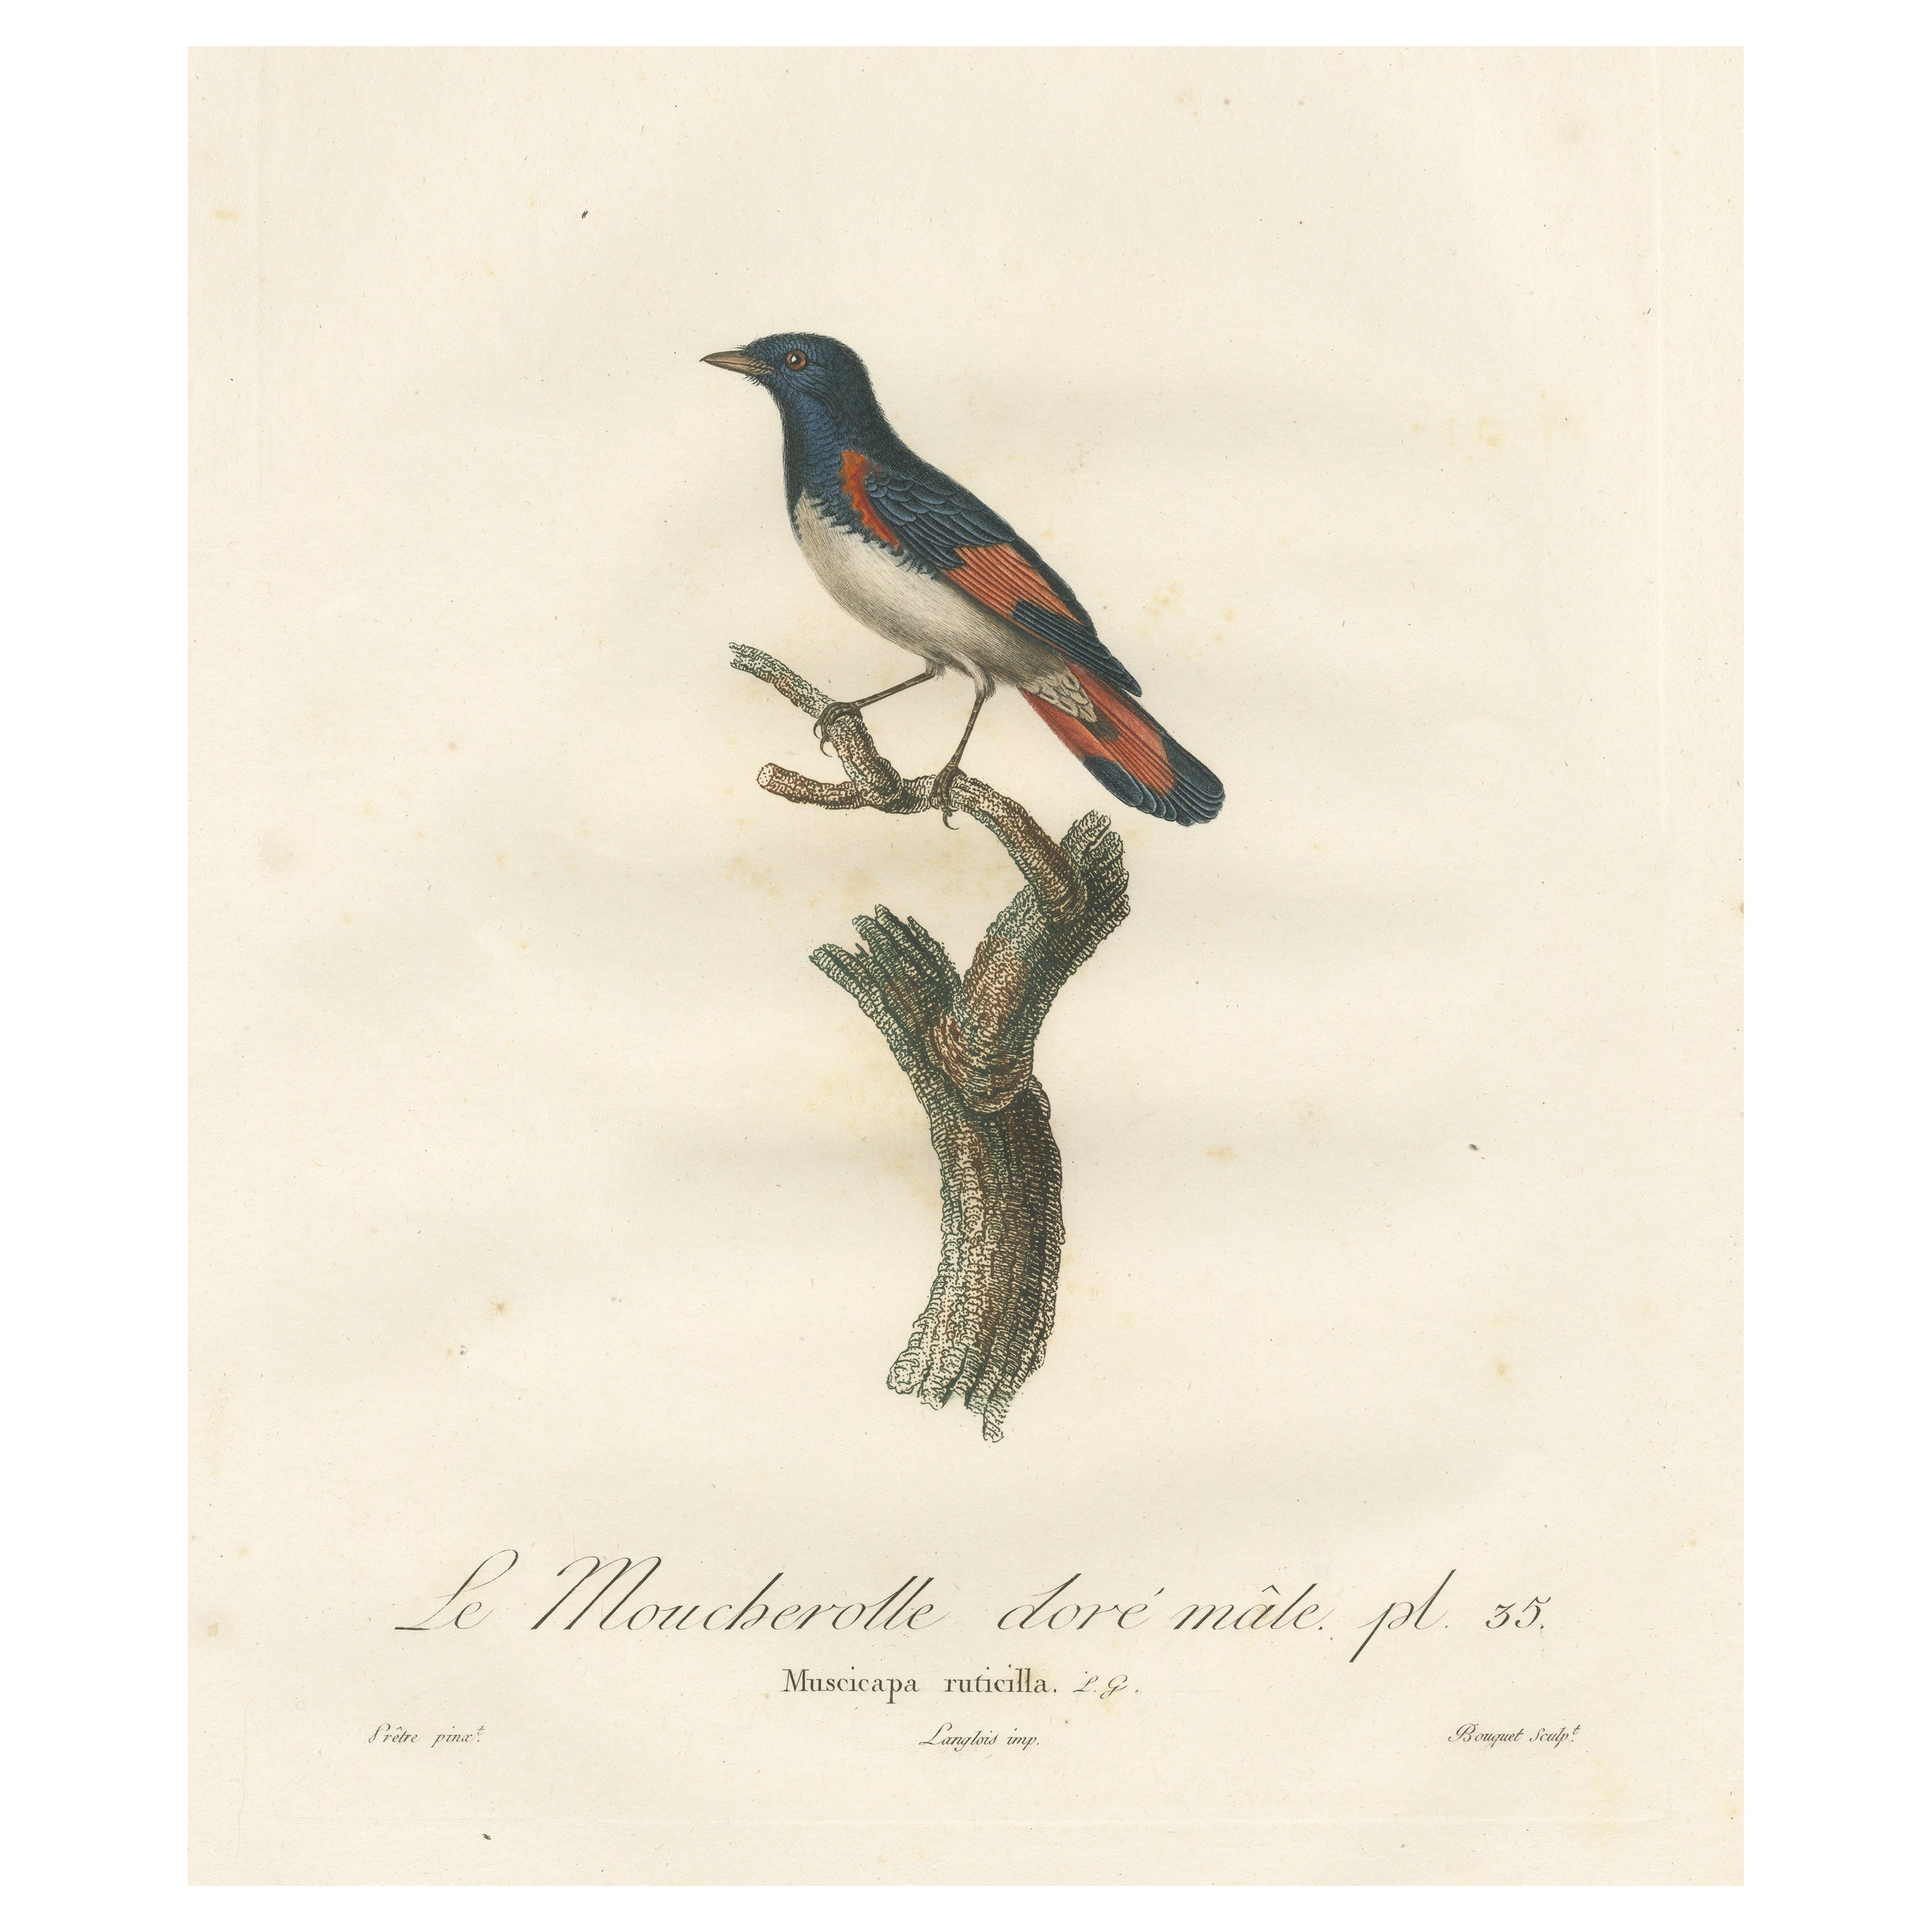 1807 Amerikanischer Gartenrotschwanz Illustration - 'Le Moucherolle doré mâle' Alter Vogeldruck